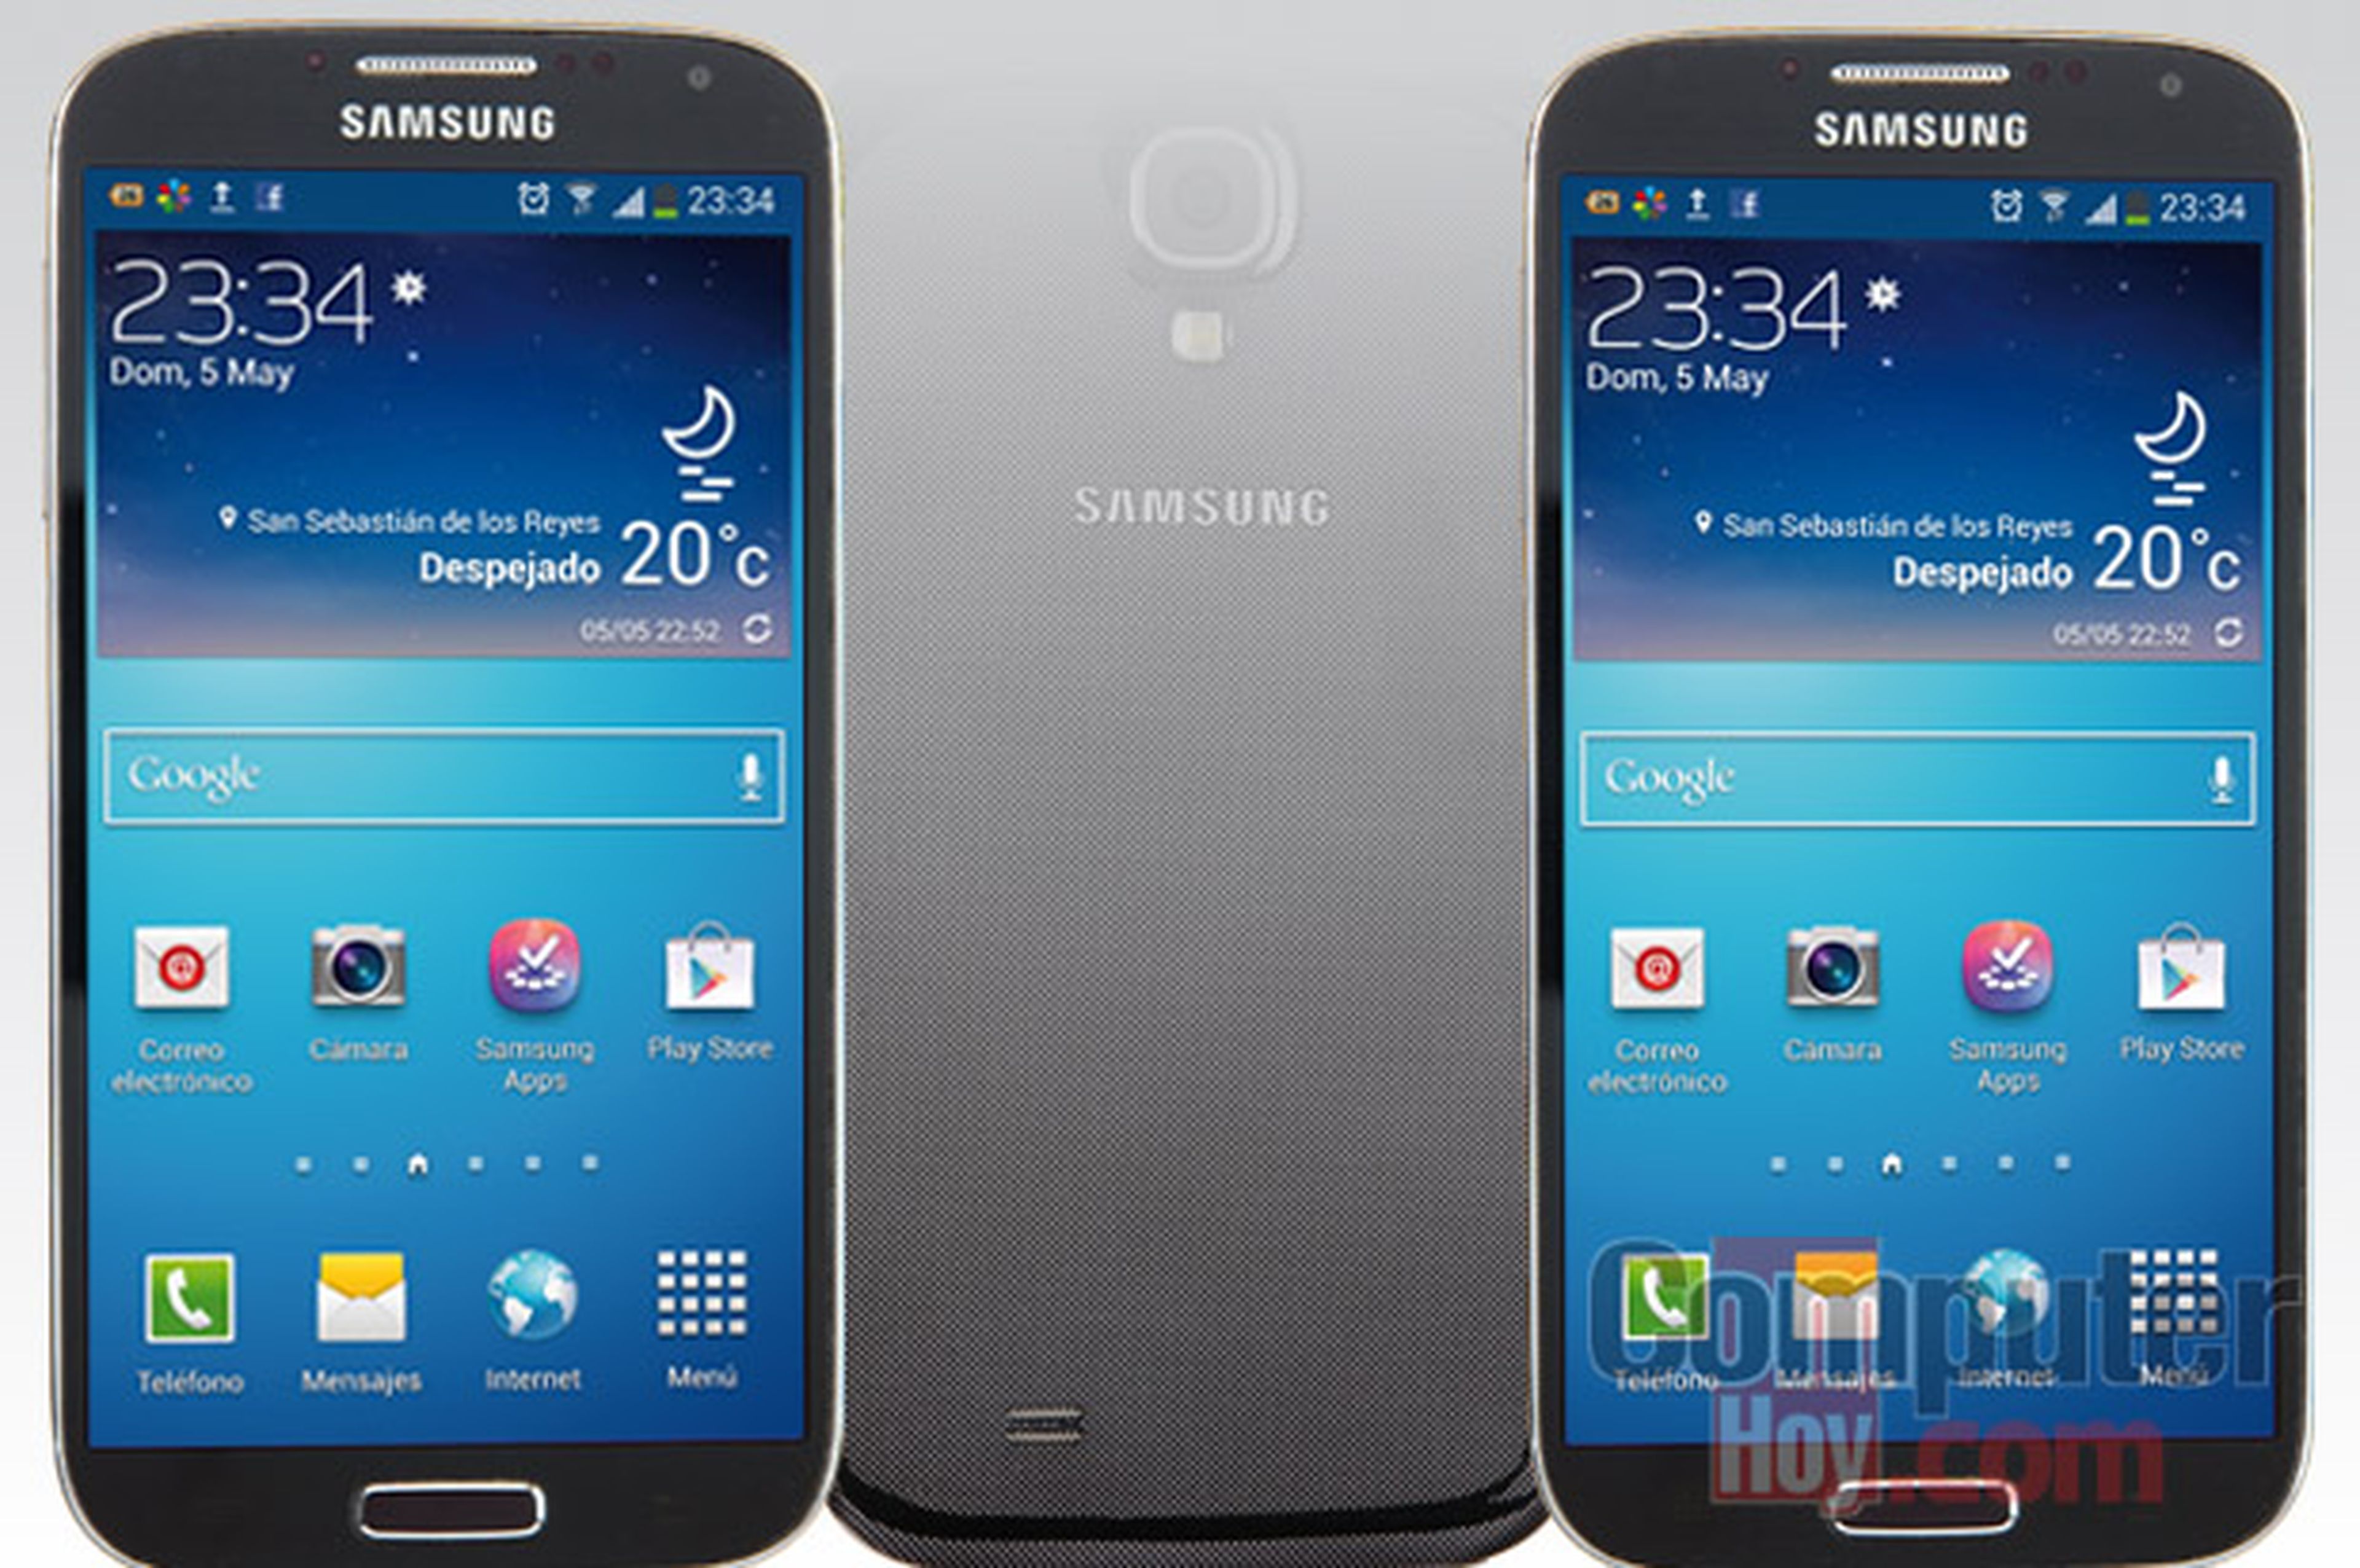 AnÃ¡lisis del Samsung Galaxy S4: caracterÃ­sticas y funciones